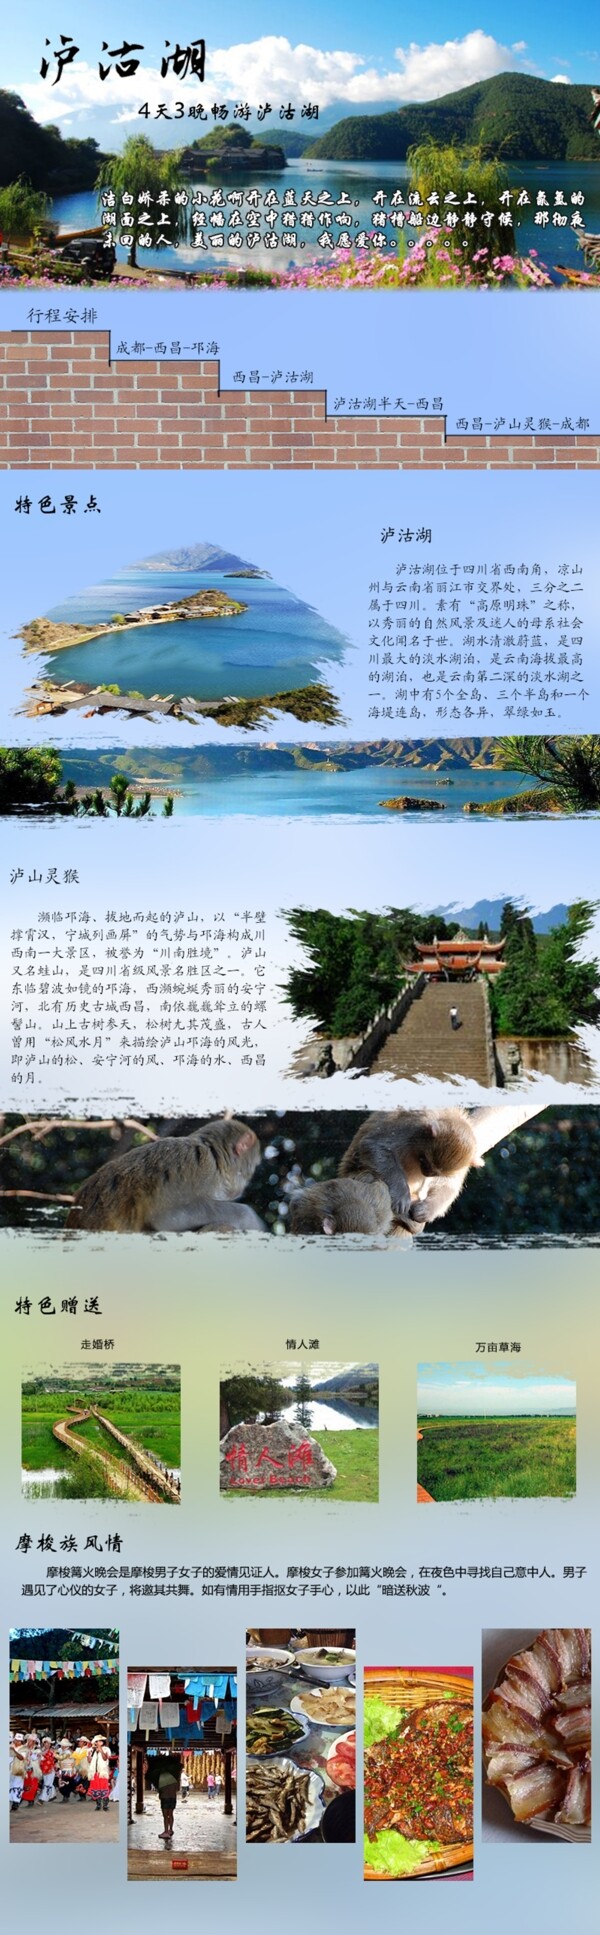 泸沽湖行程特色图片